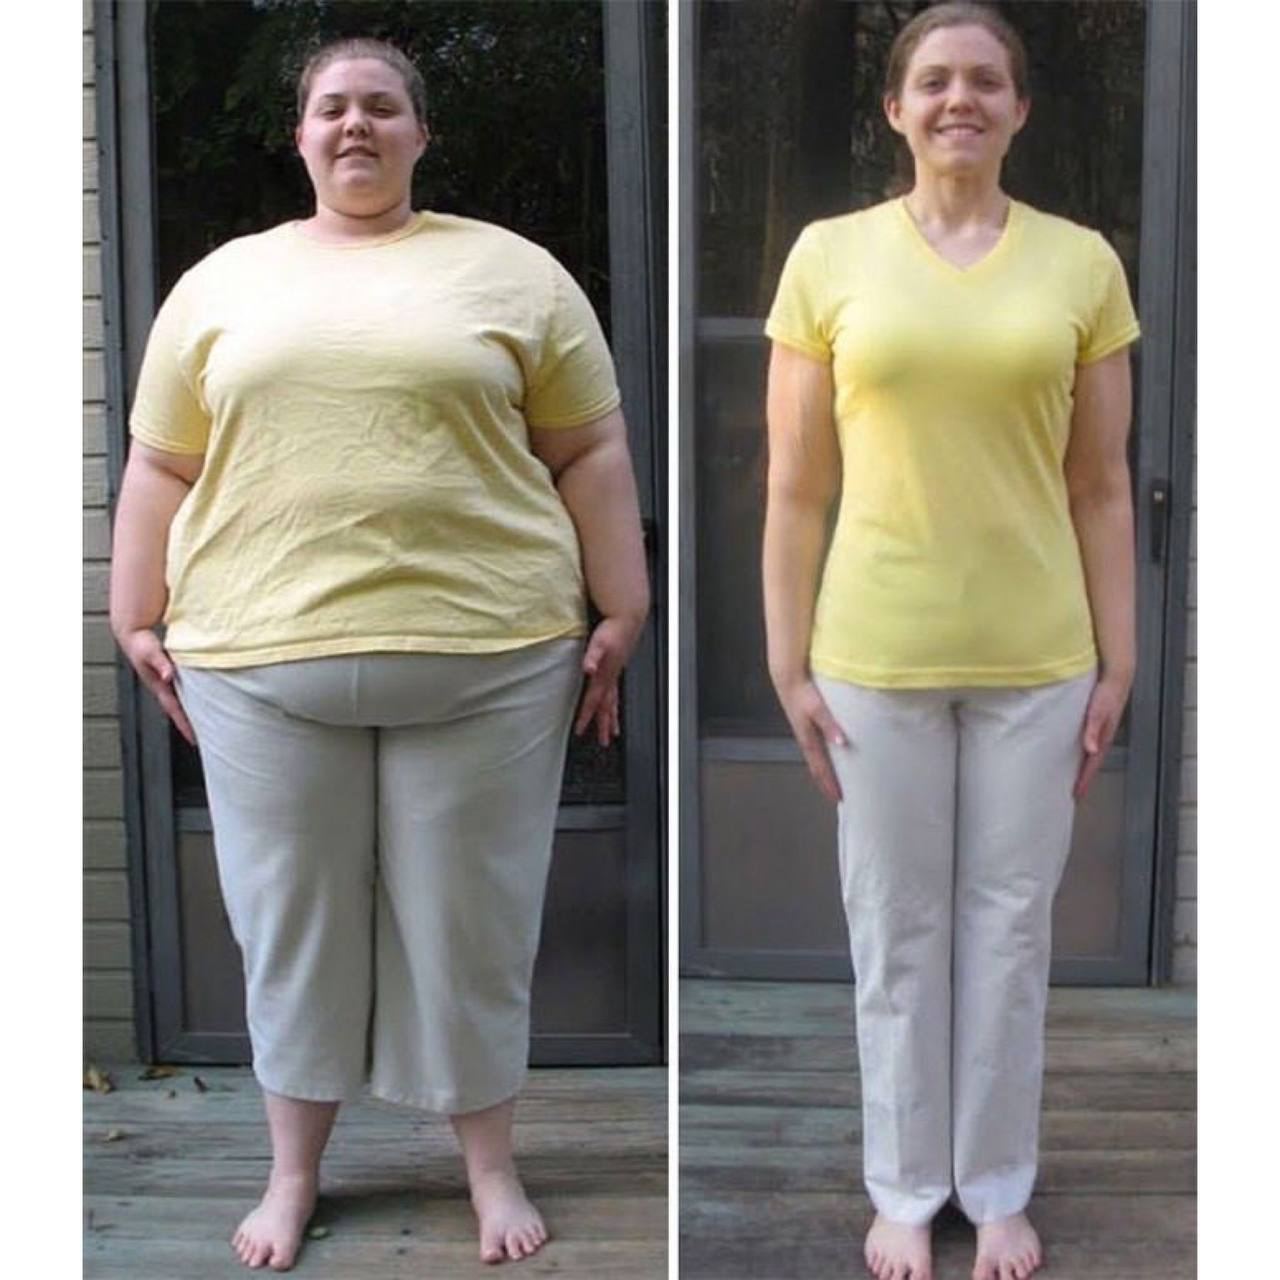 Была толстой потом похудела. Похудение до и после. Похудение до и после фото. Похудение до и послефтто. До и после похудения женщины.